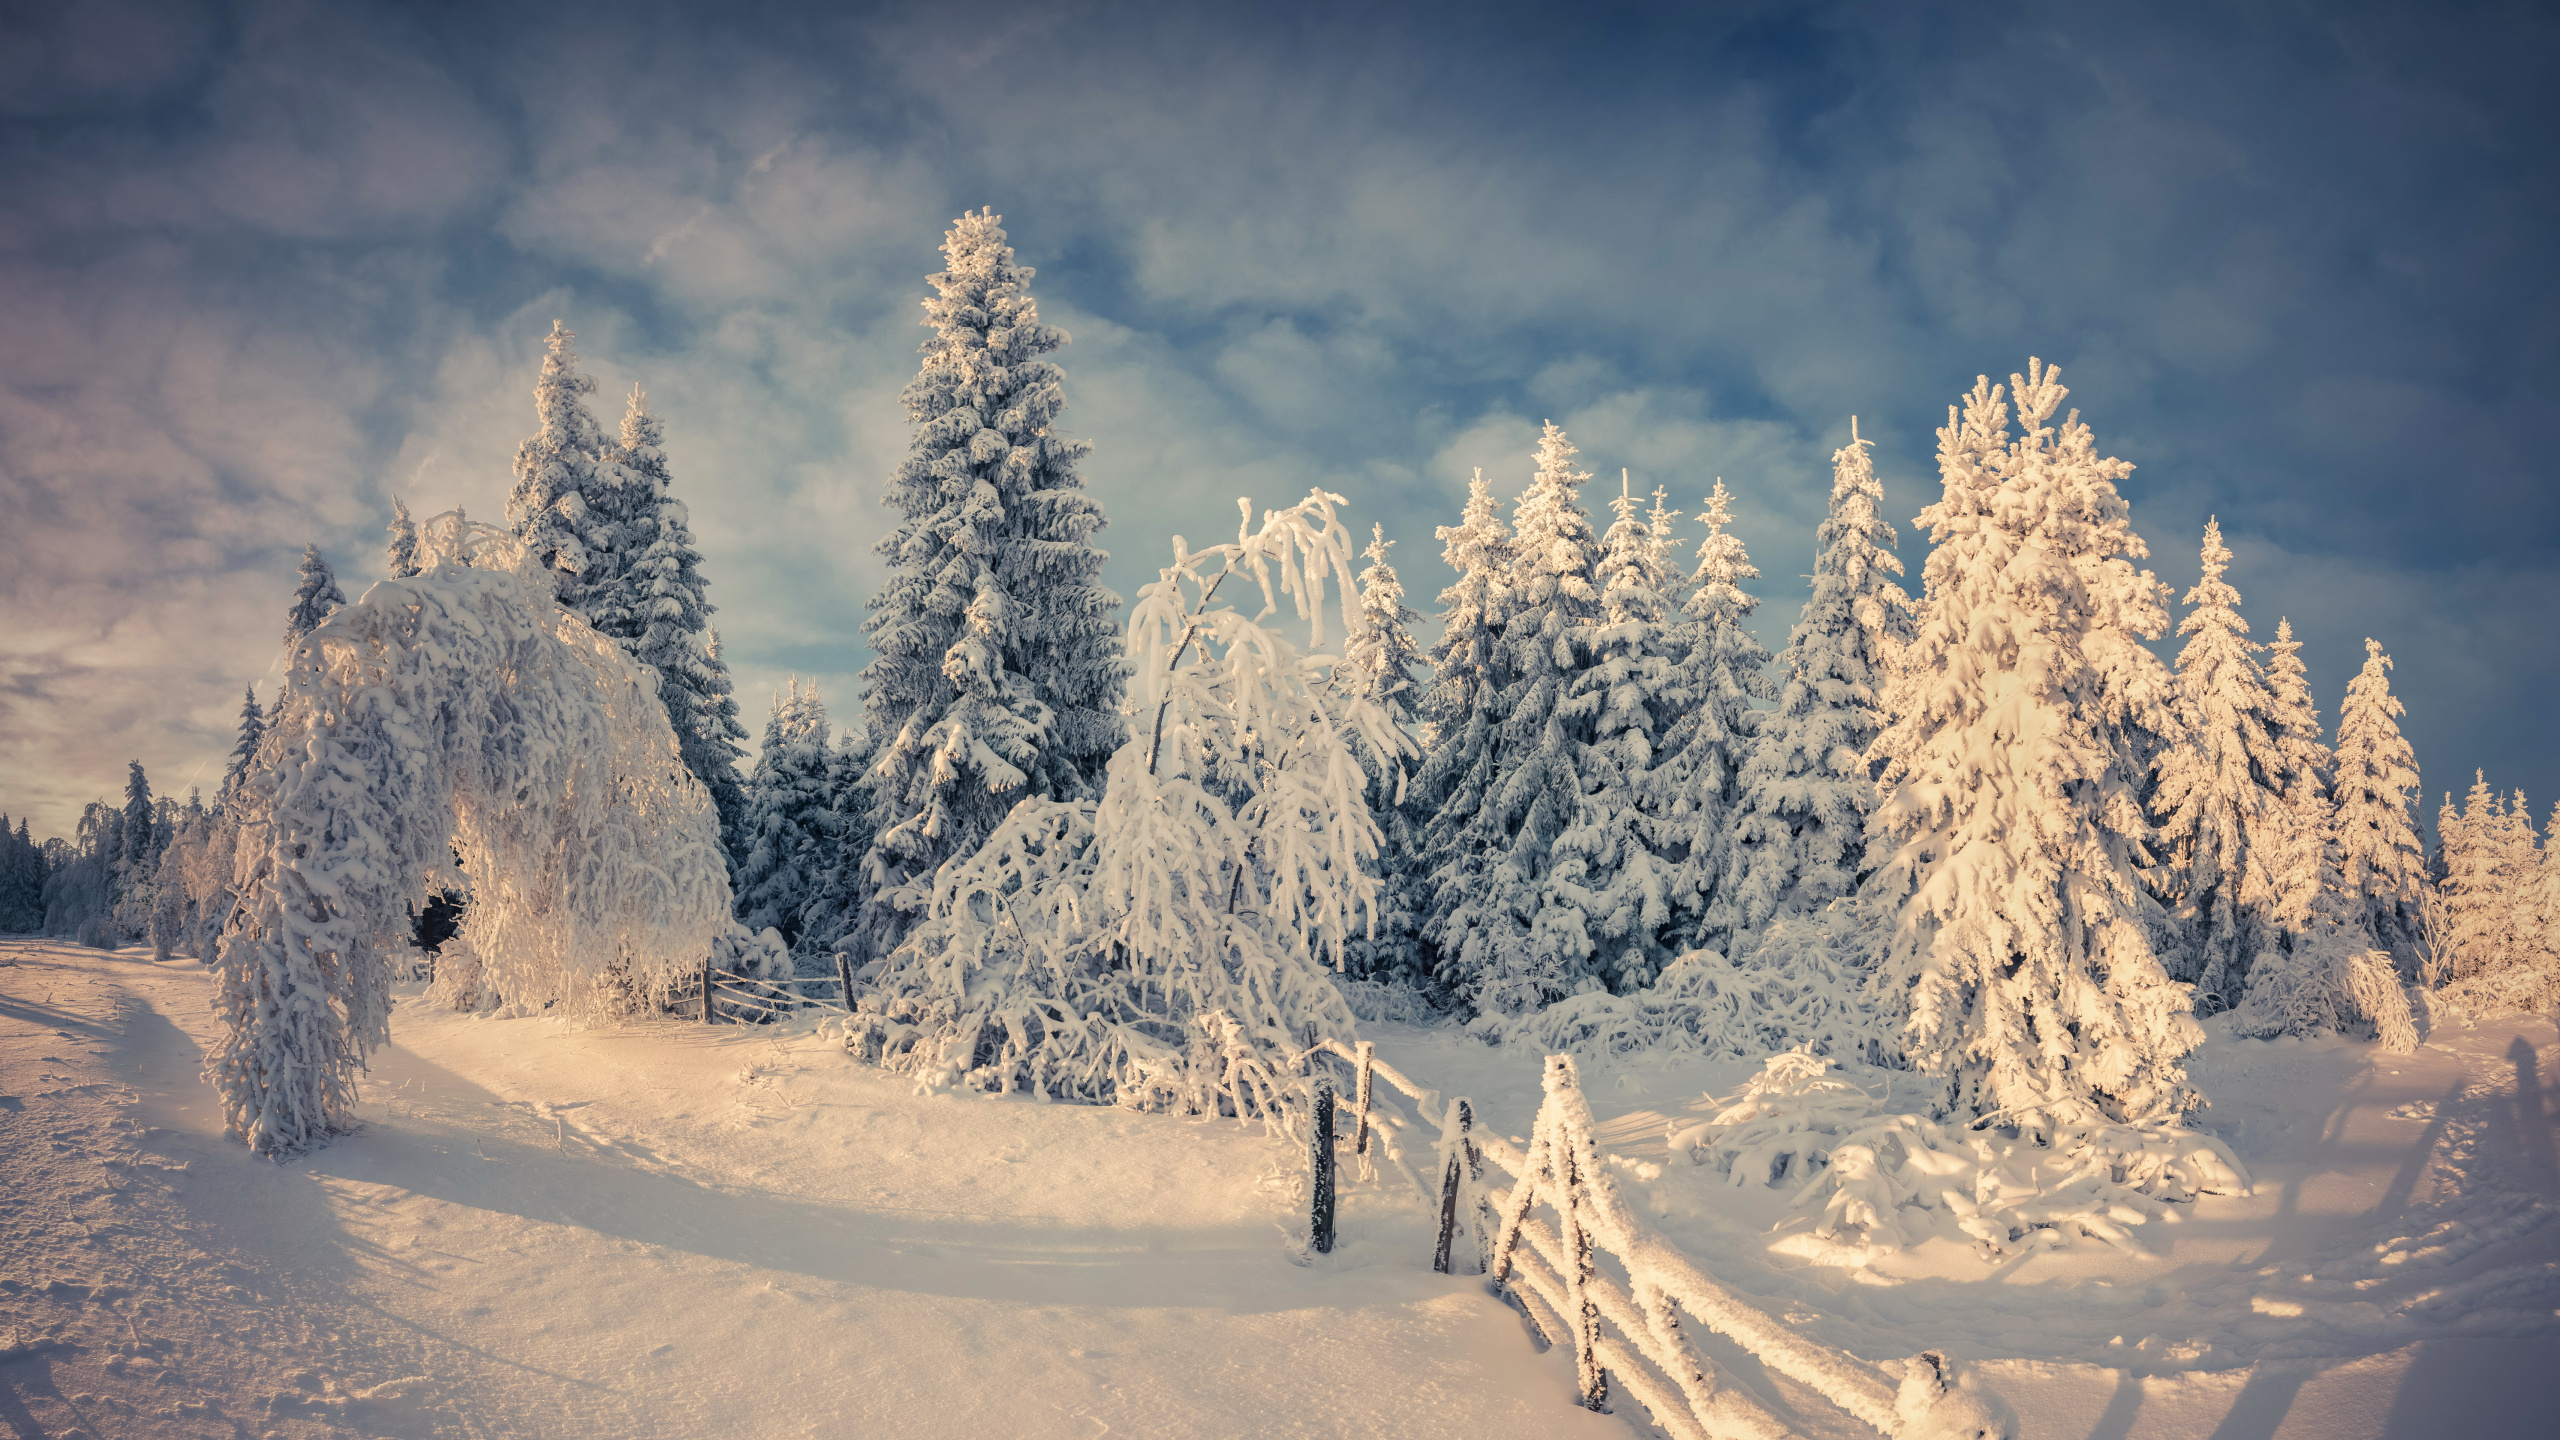 冬天, 性质, 冻结, Fir, 木本植物 壁纸 2560x1440 允许